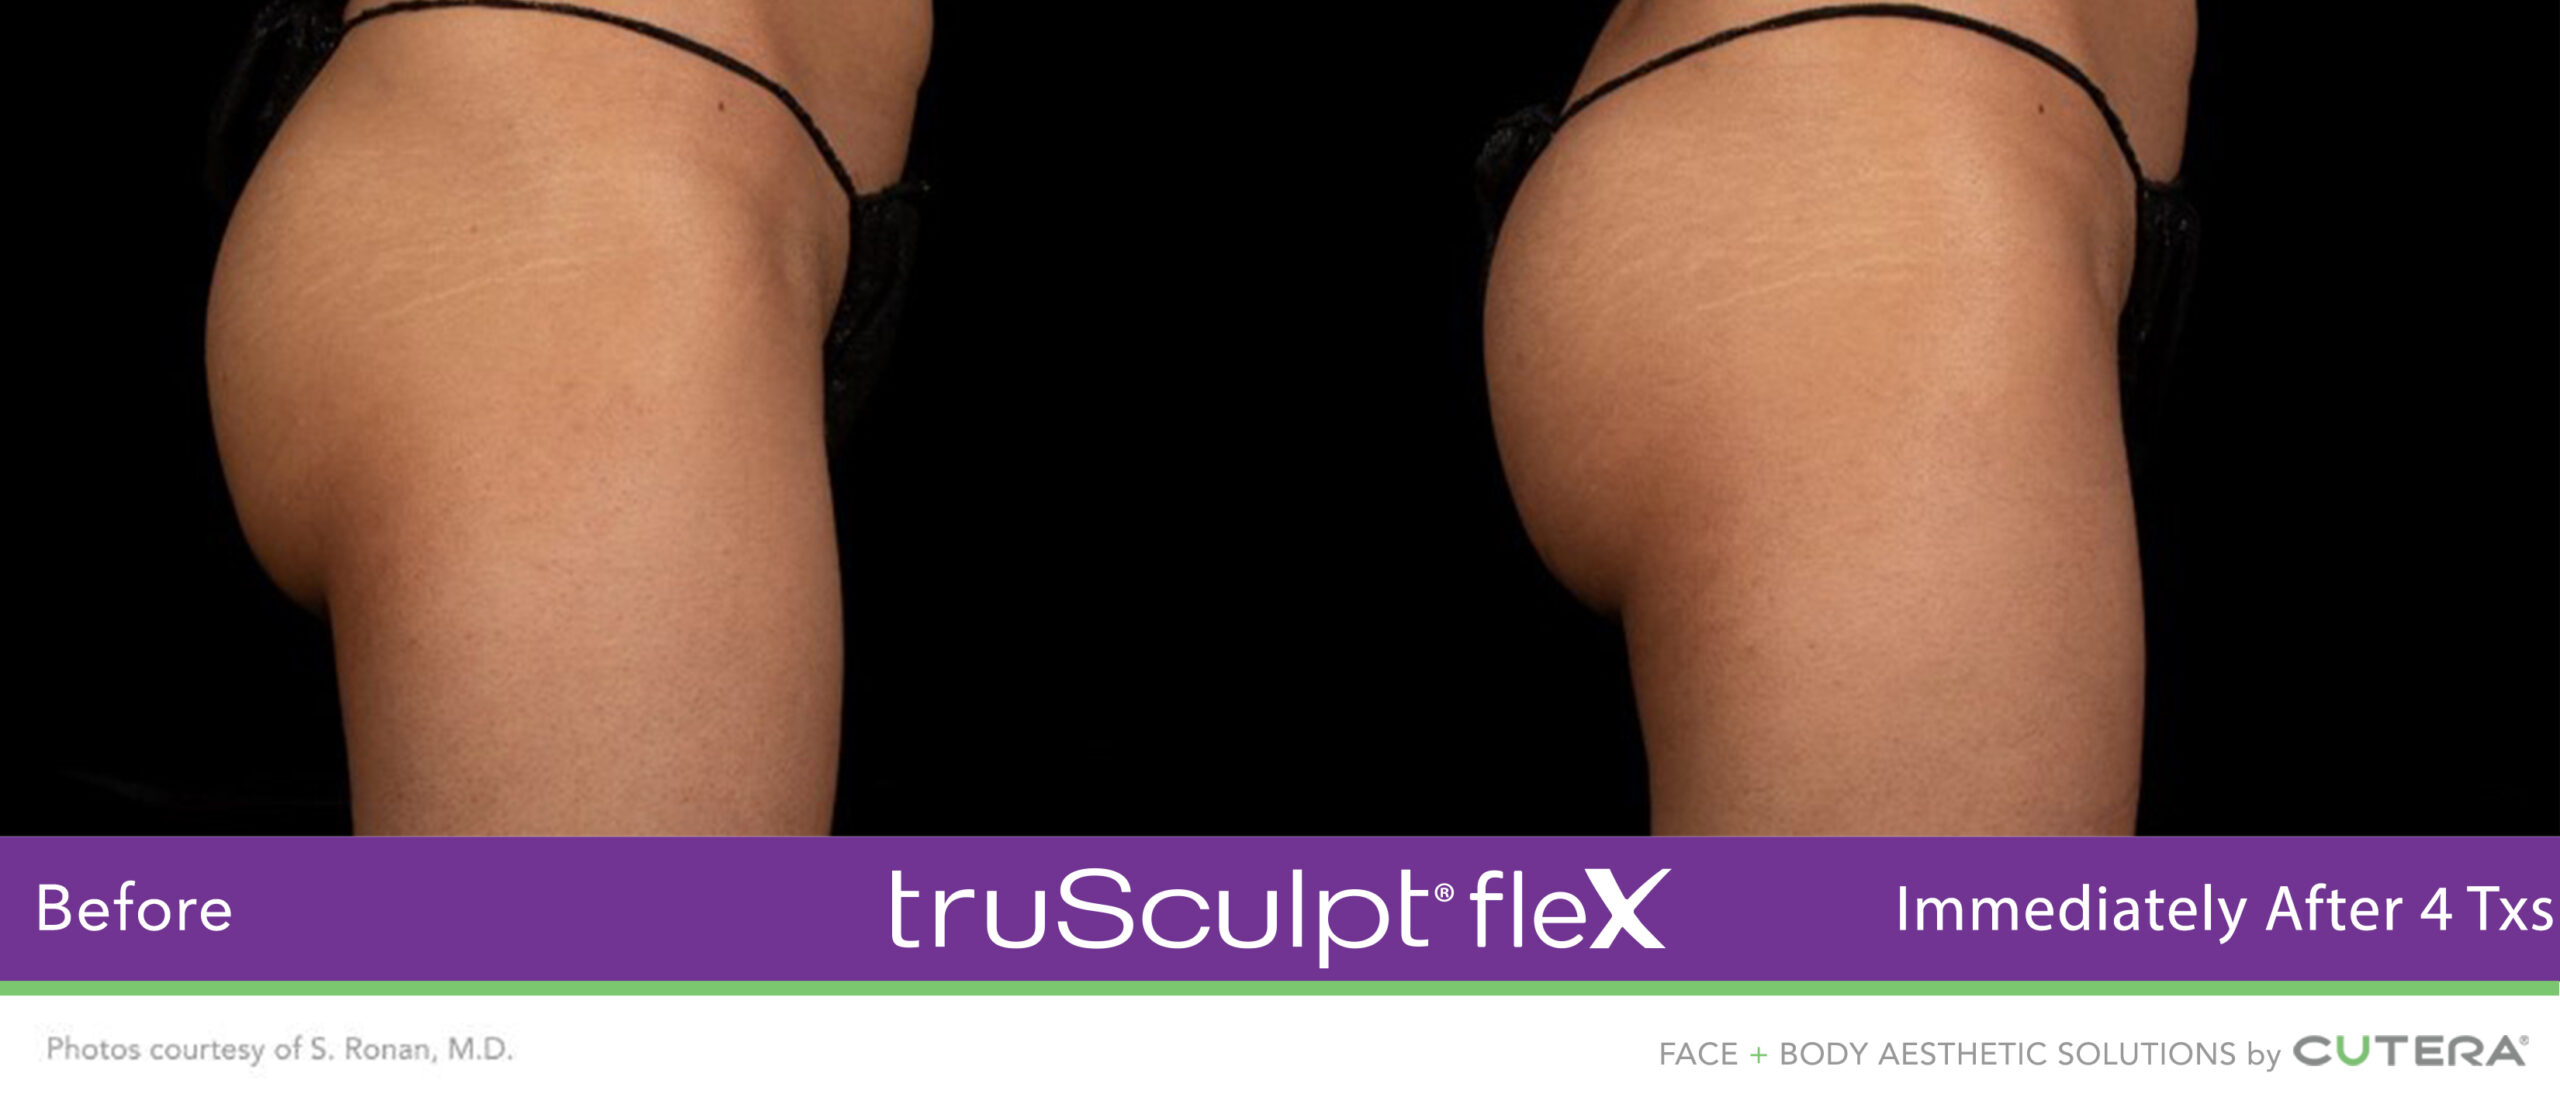 Trusculpt Flex – Before & After – Buttocks 1